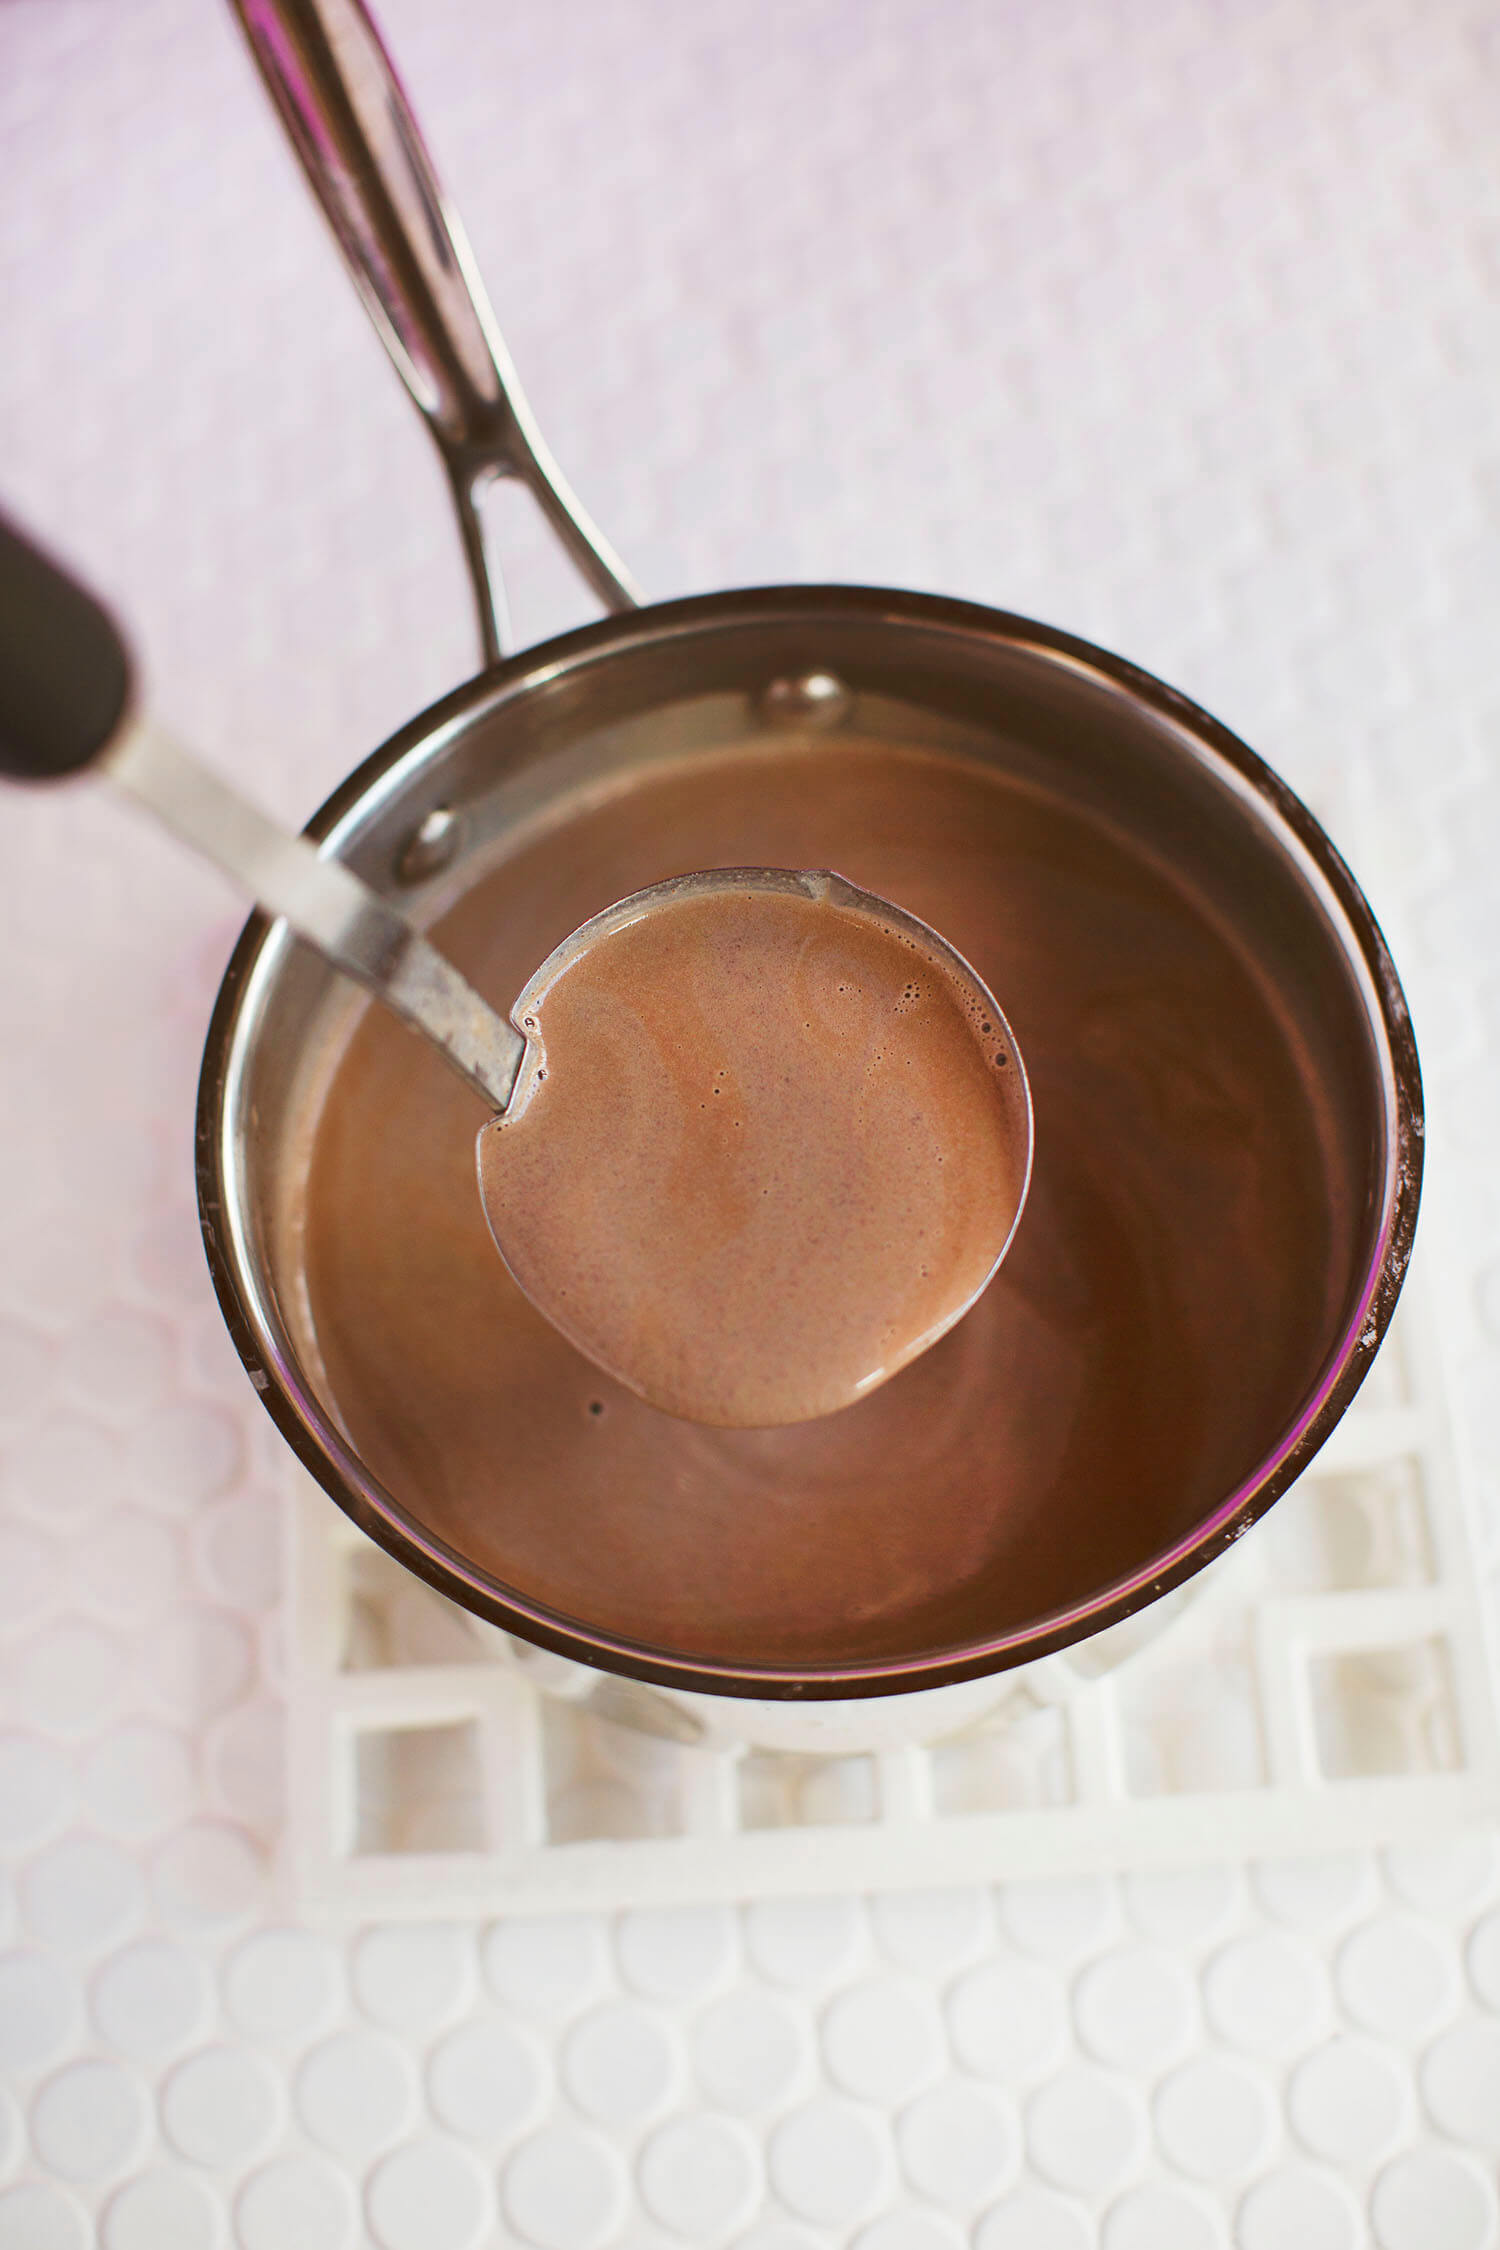 Homemade hot chocolate recipe